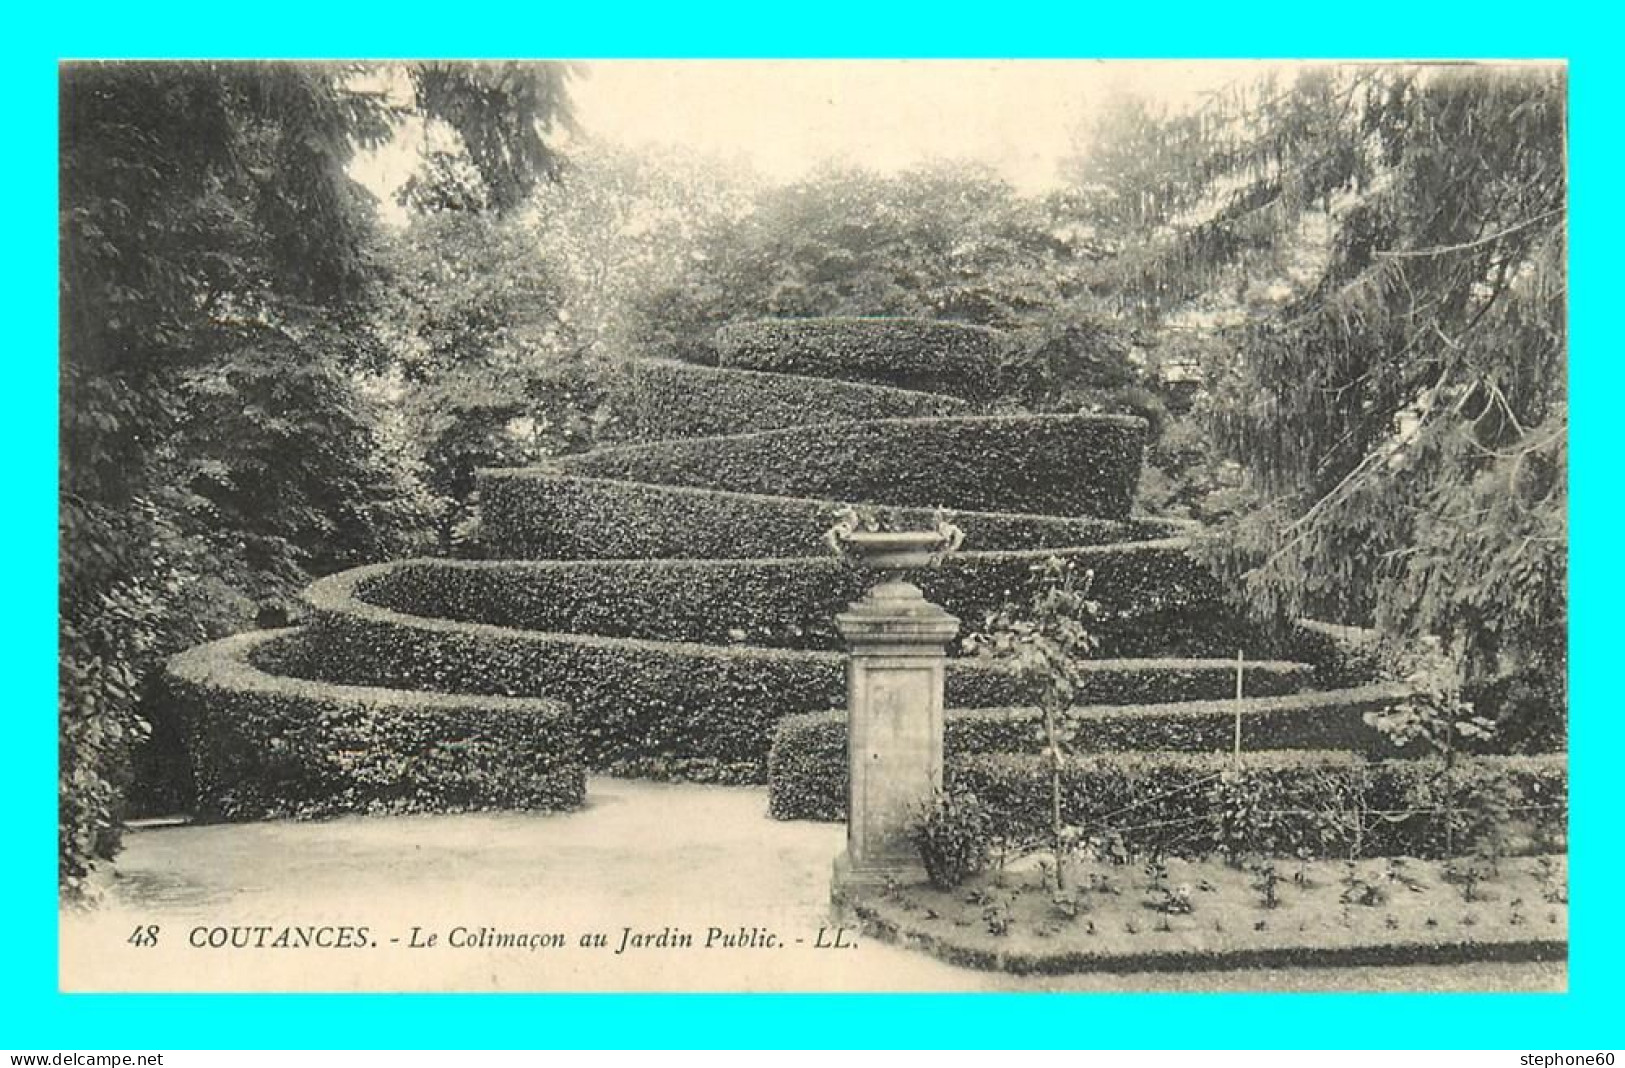 A884 / 191 50 - COUTANCES Colimacon Au Jardin Public - Coutances